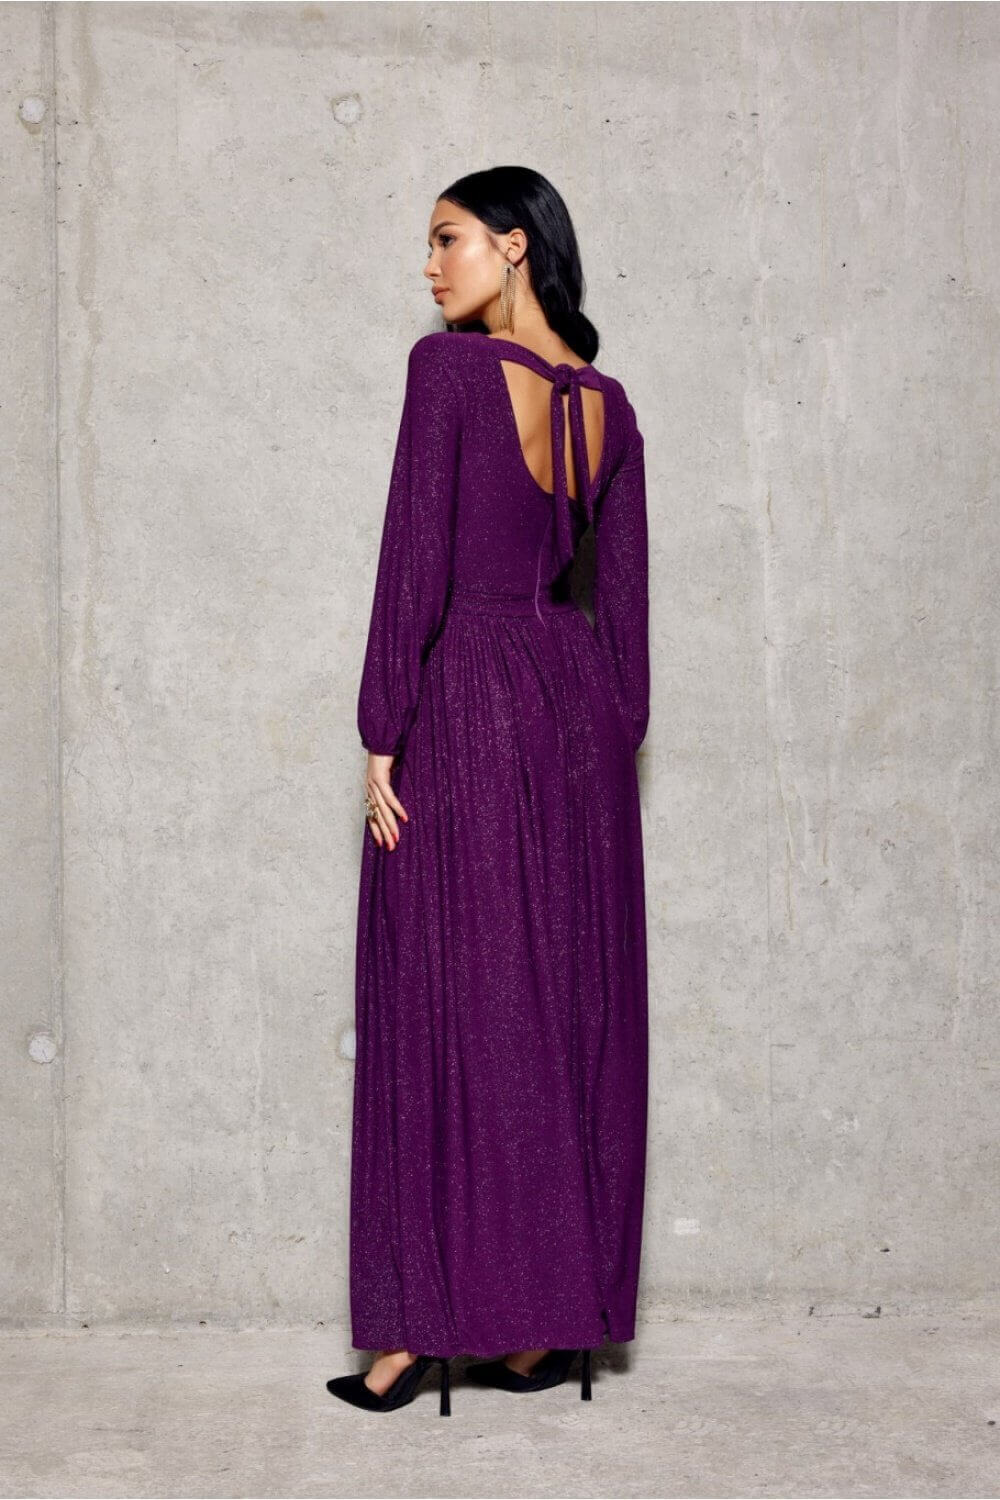 Long dress model 188252 Roco Fashion | Shangri-La Fashion